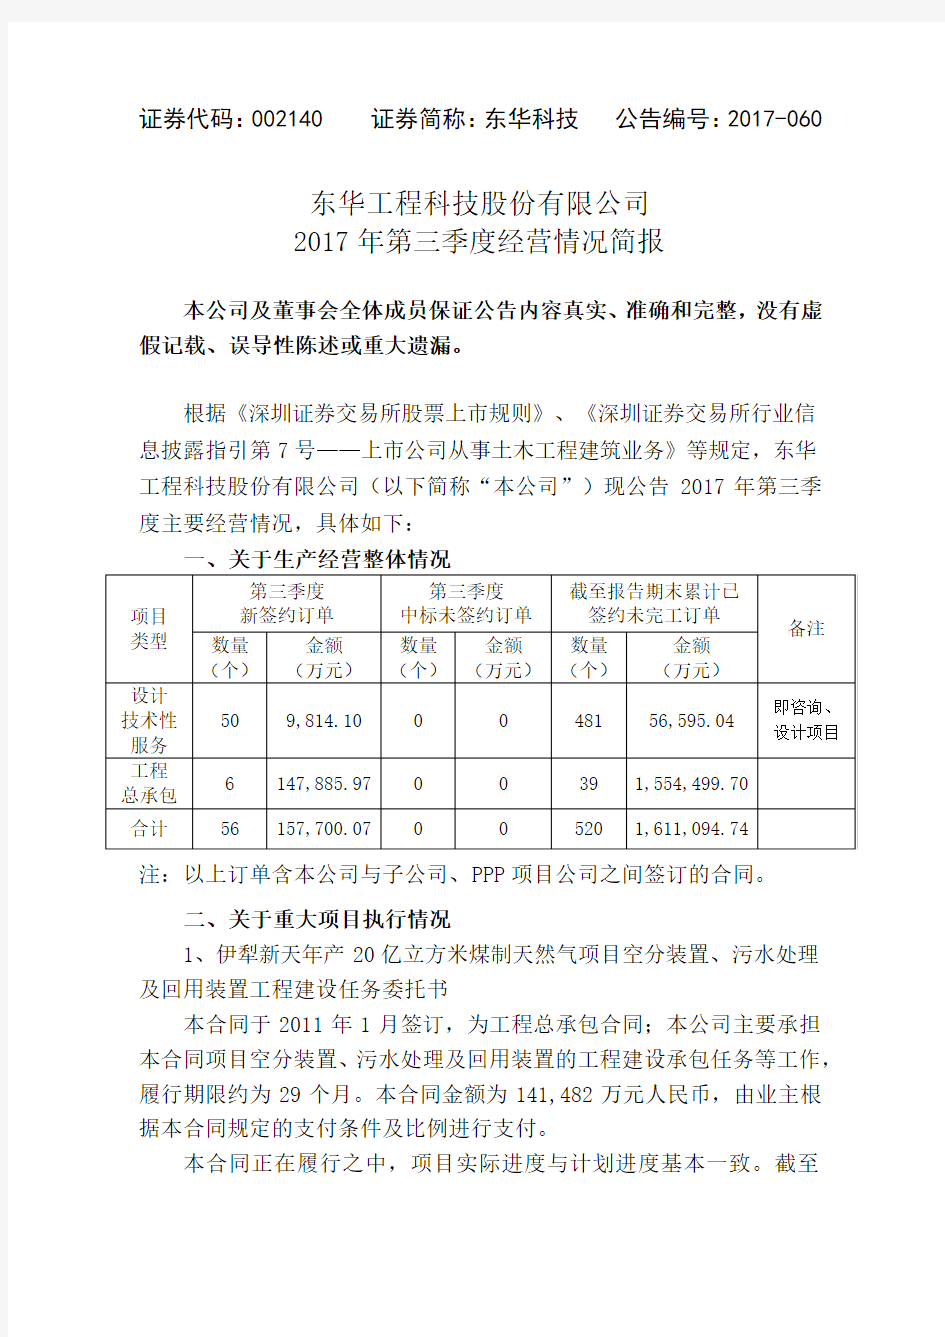 东华工程科技股份有限公司2017年第三季度经营情况简报